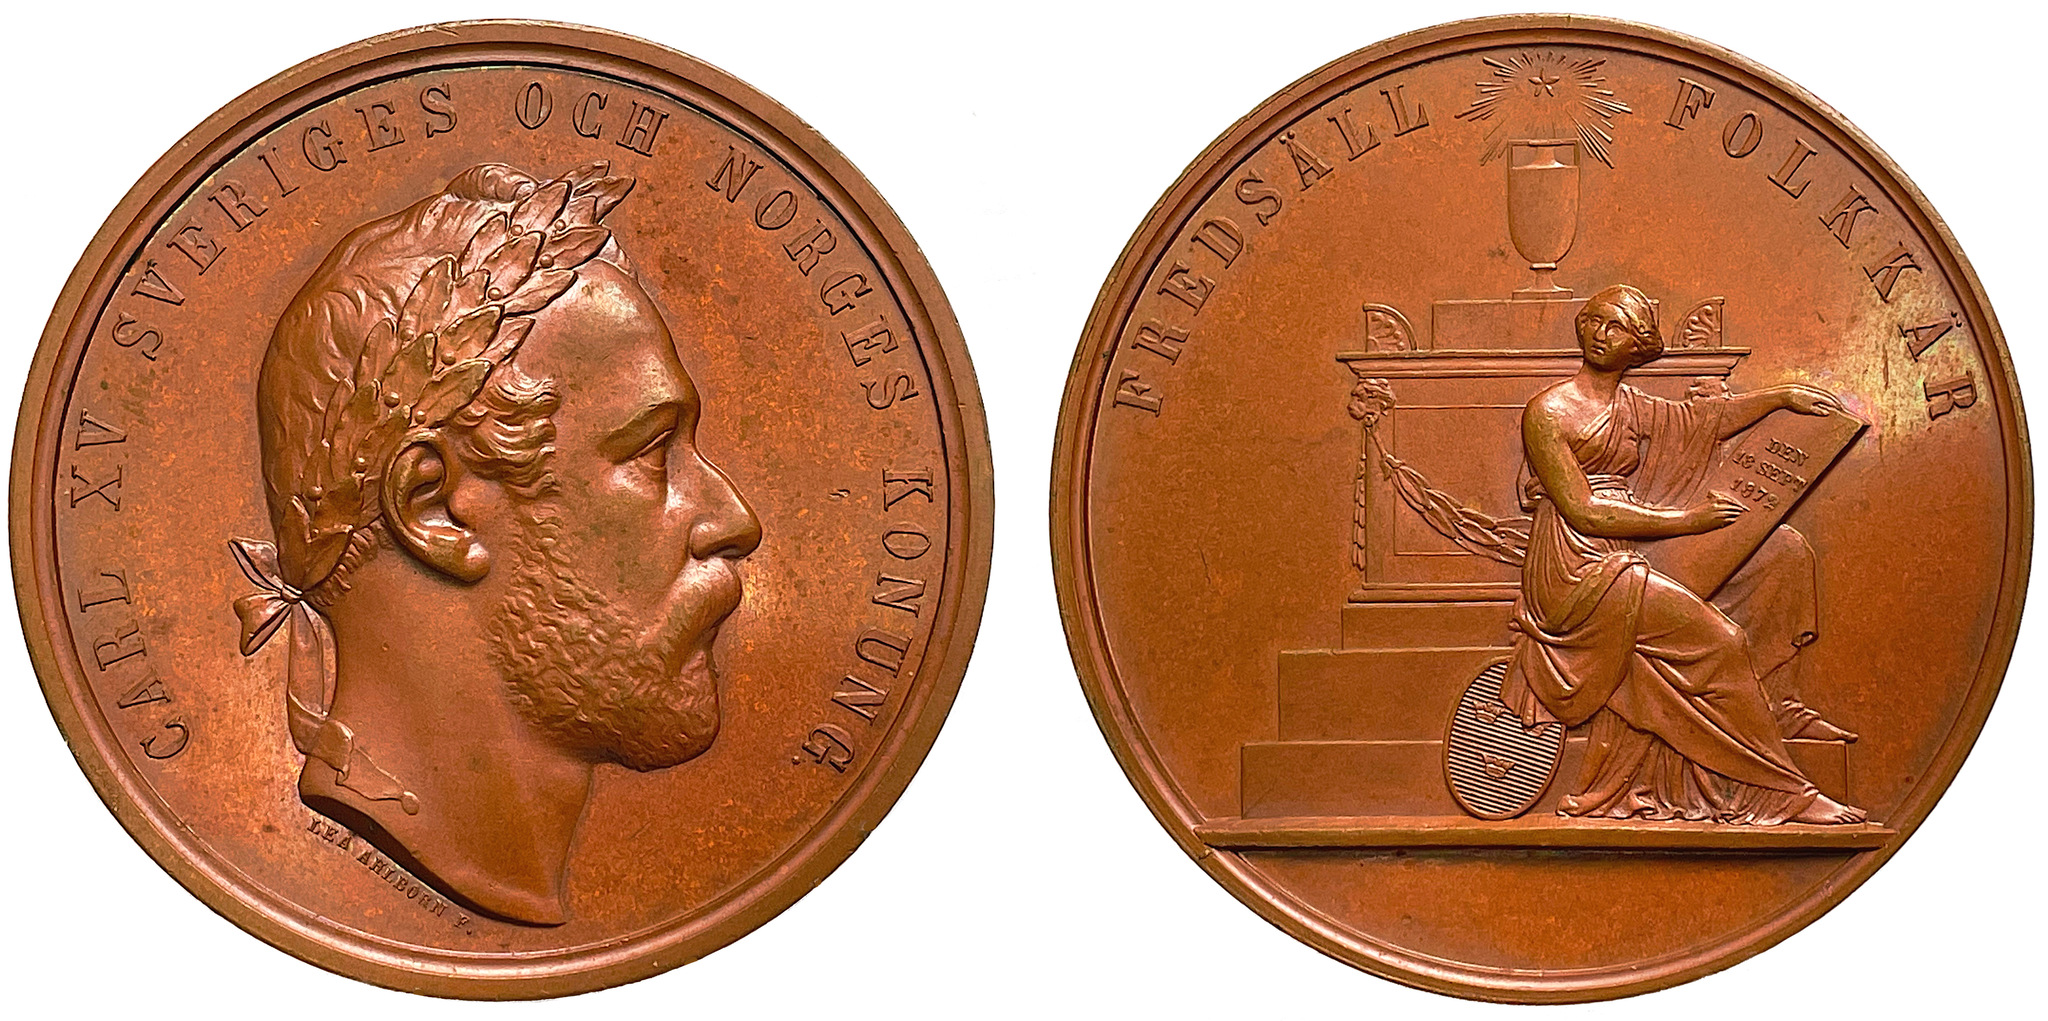 Karl XV:s död den 18 september 1872 av Lea Ahlborn - Sällsynt i brons